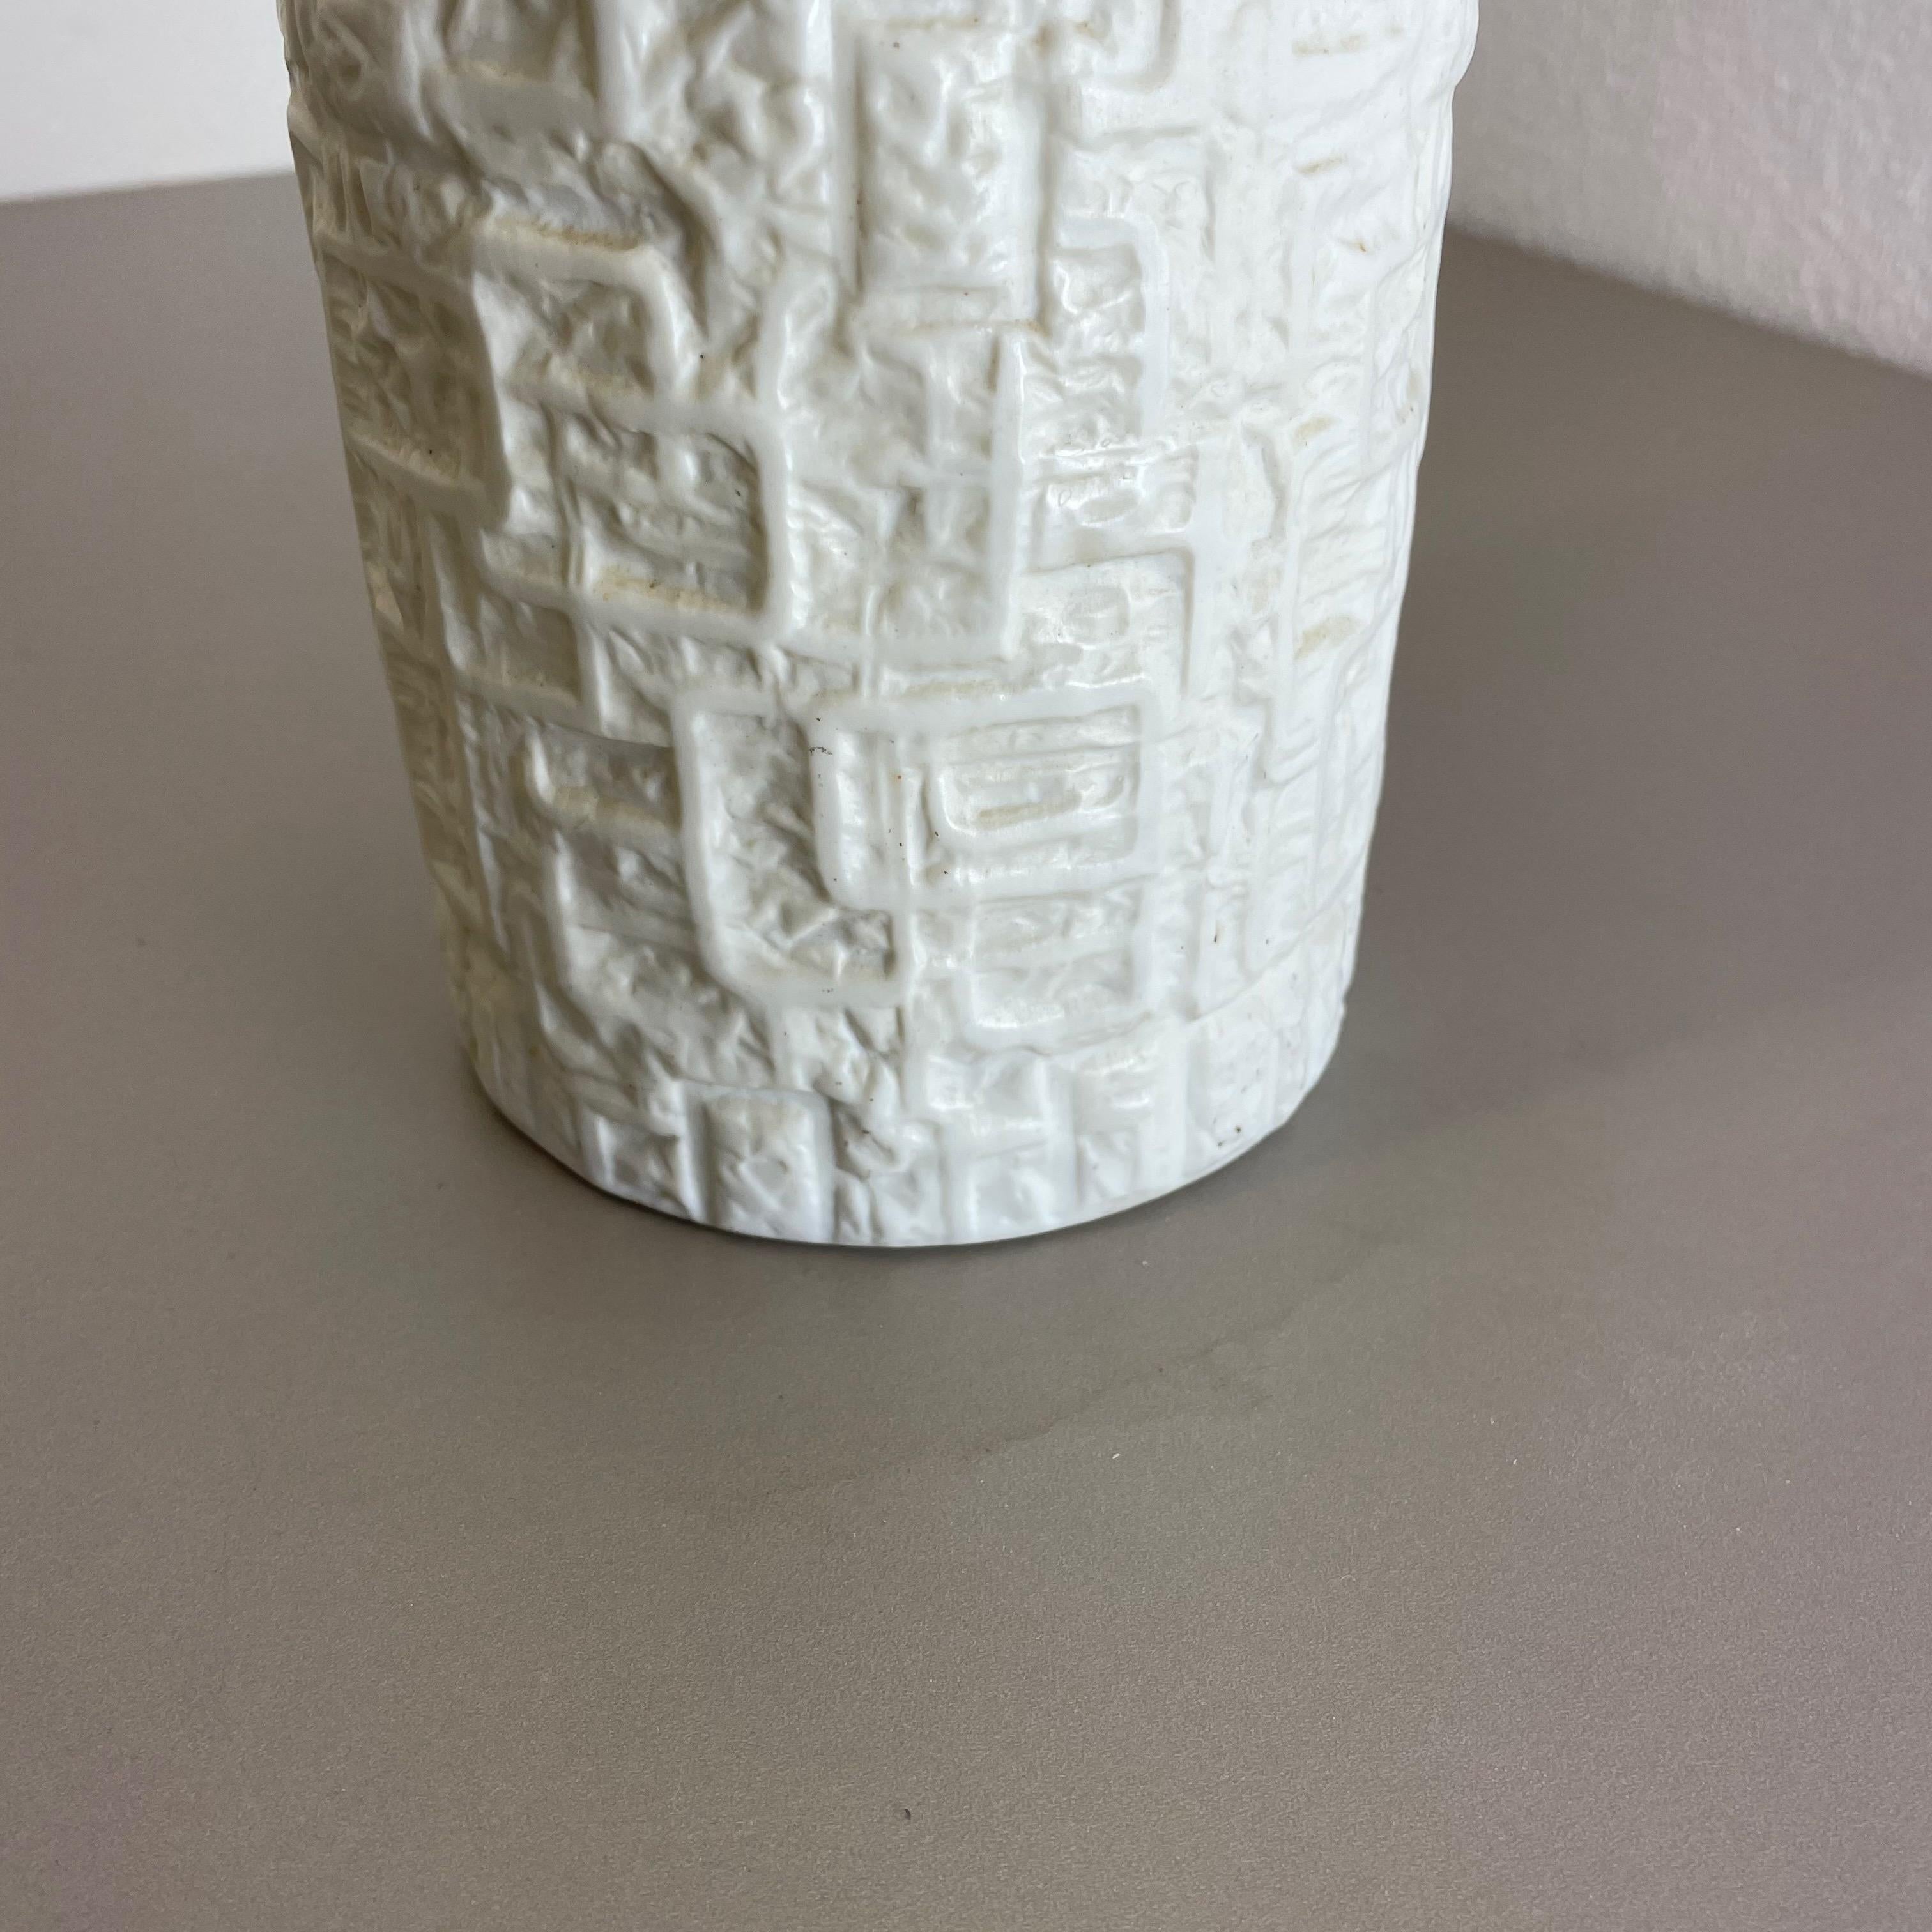 Large OP Art Vase Porcelain Vase by Martin Freyer for Rosenthal, Germany For Sale 8